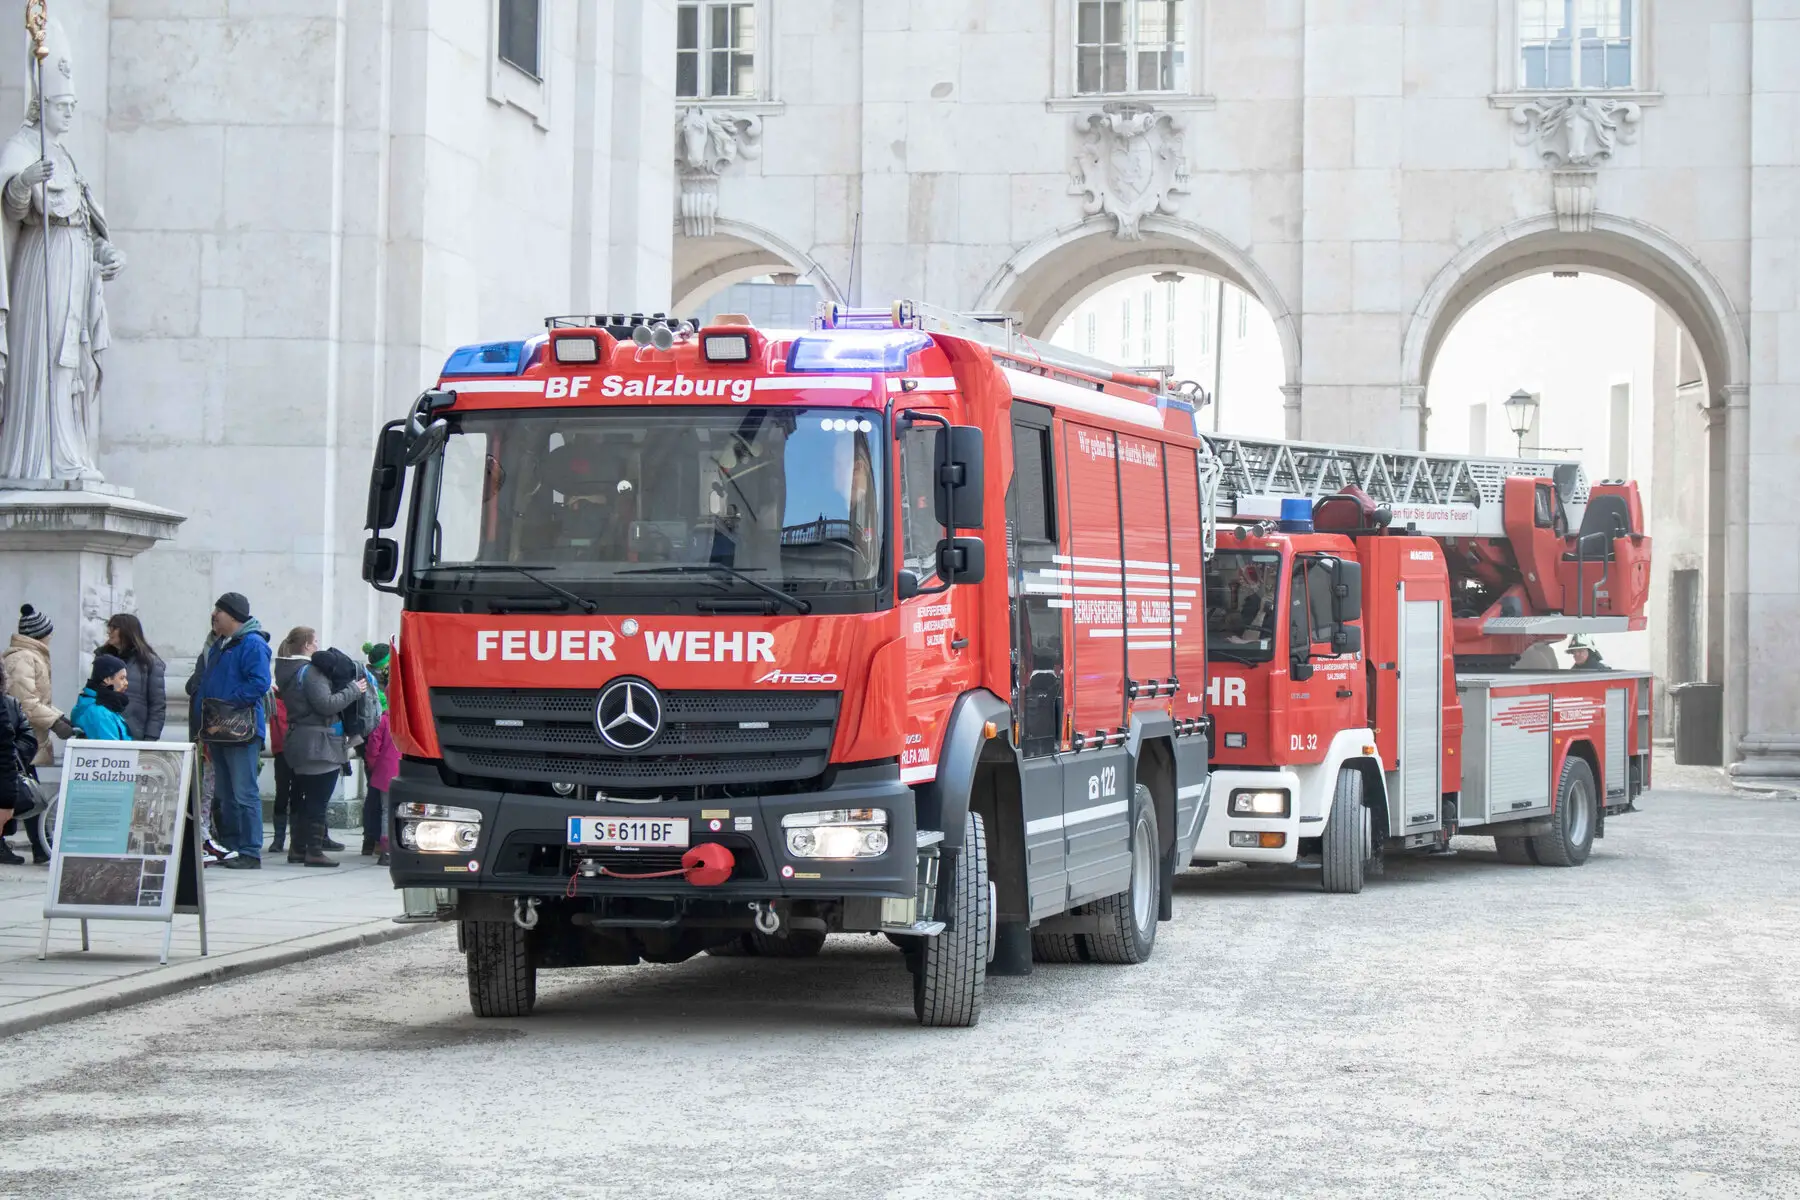 Feuerwehr truck in Salzburg